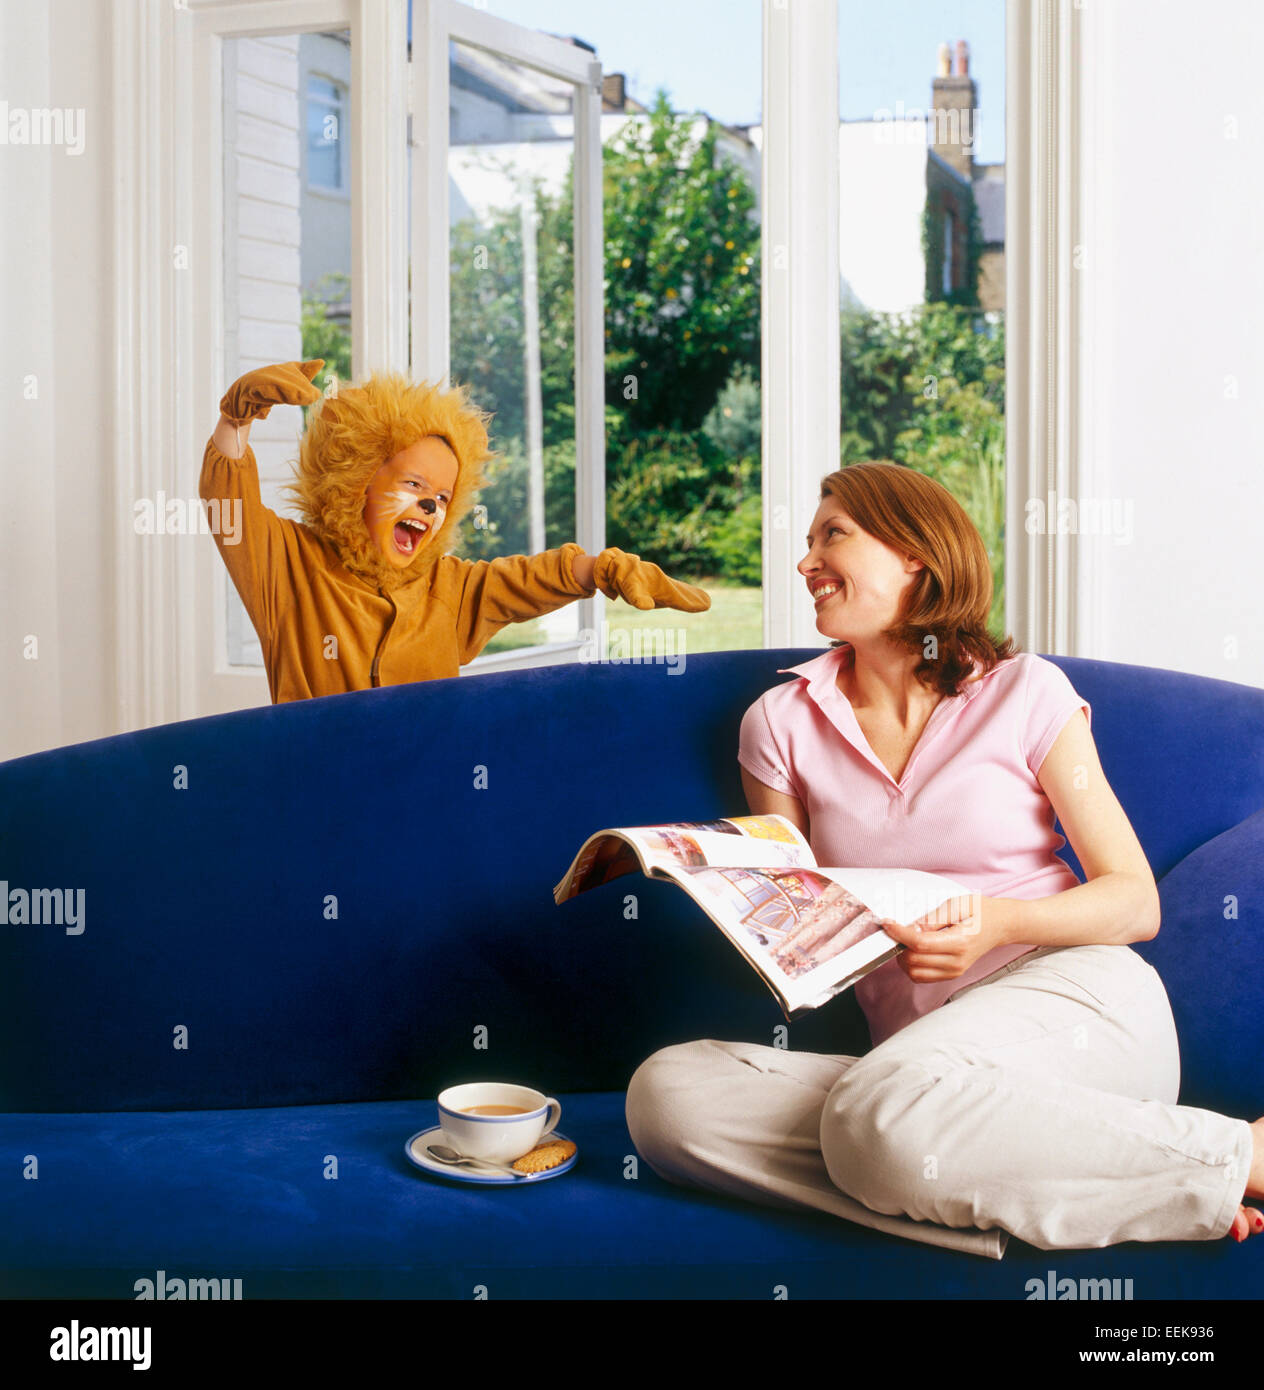 La mamma a casa seduta rilassante, leggendo un giornale, il suo bambino vestito come lion sorprese lei da dietro il divano, rumoreggianti scarily Foto Stock